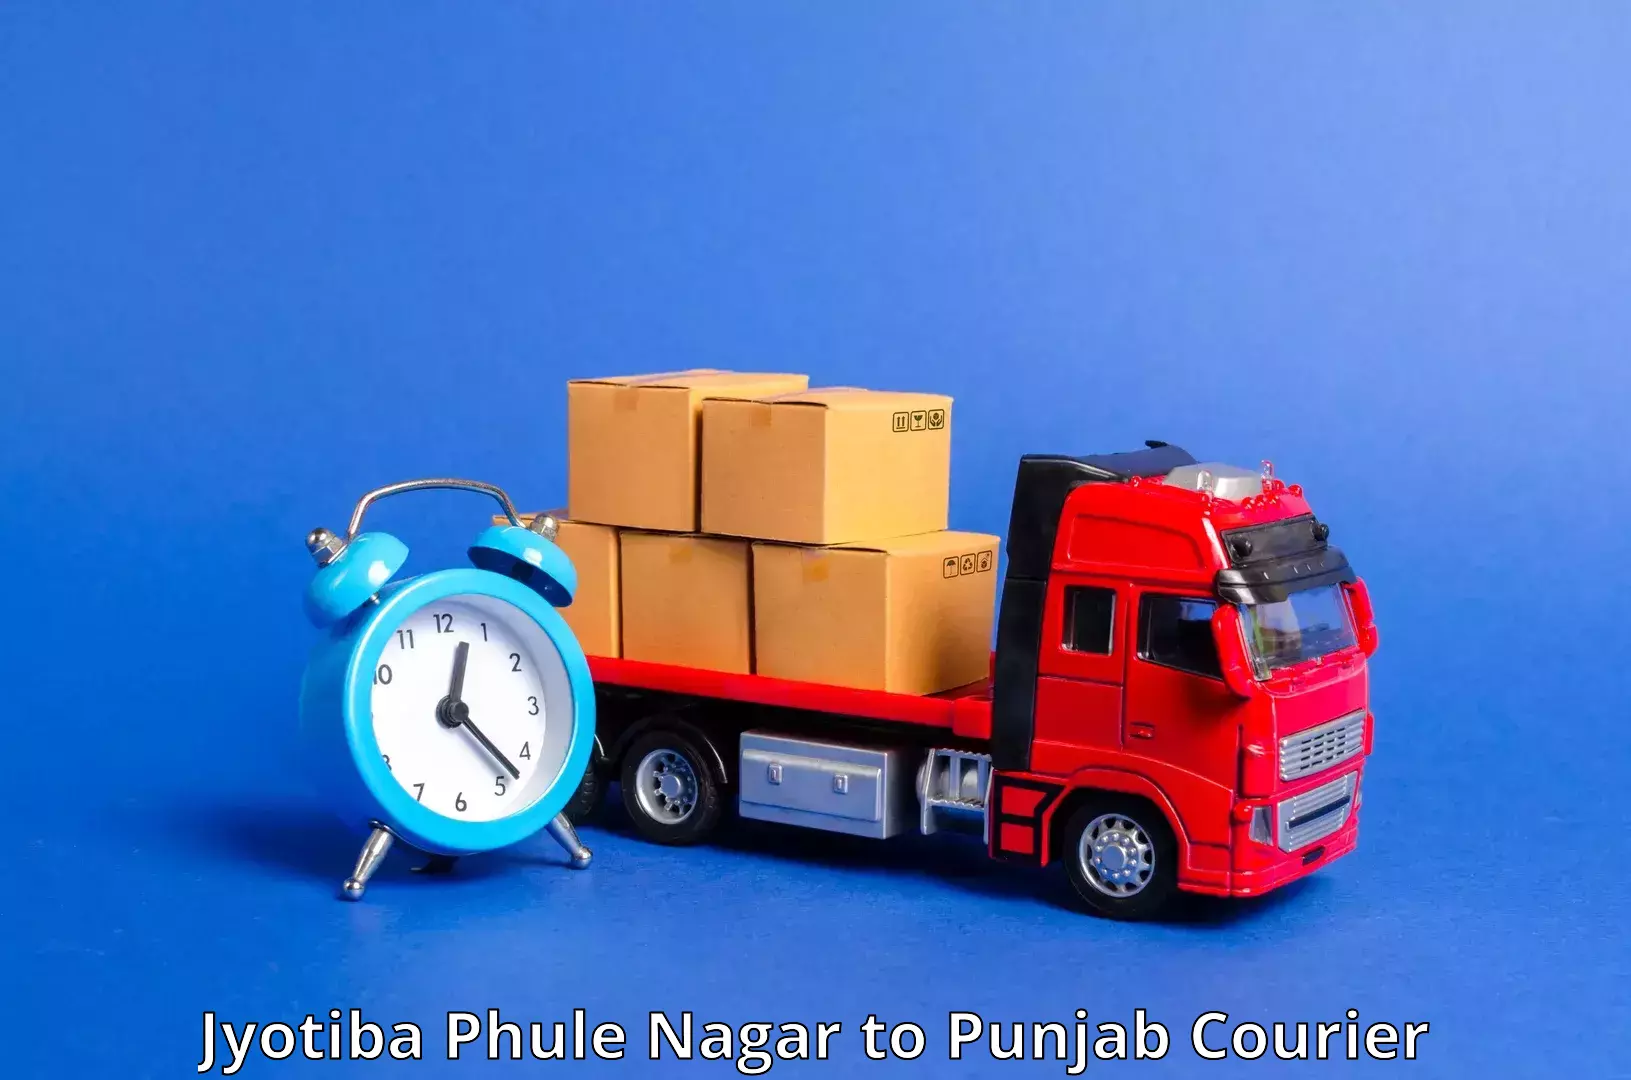 Global shipping networks Jyotiba Phule Nagar to Dharamkot